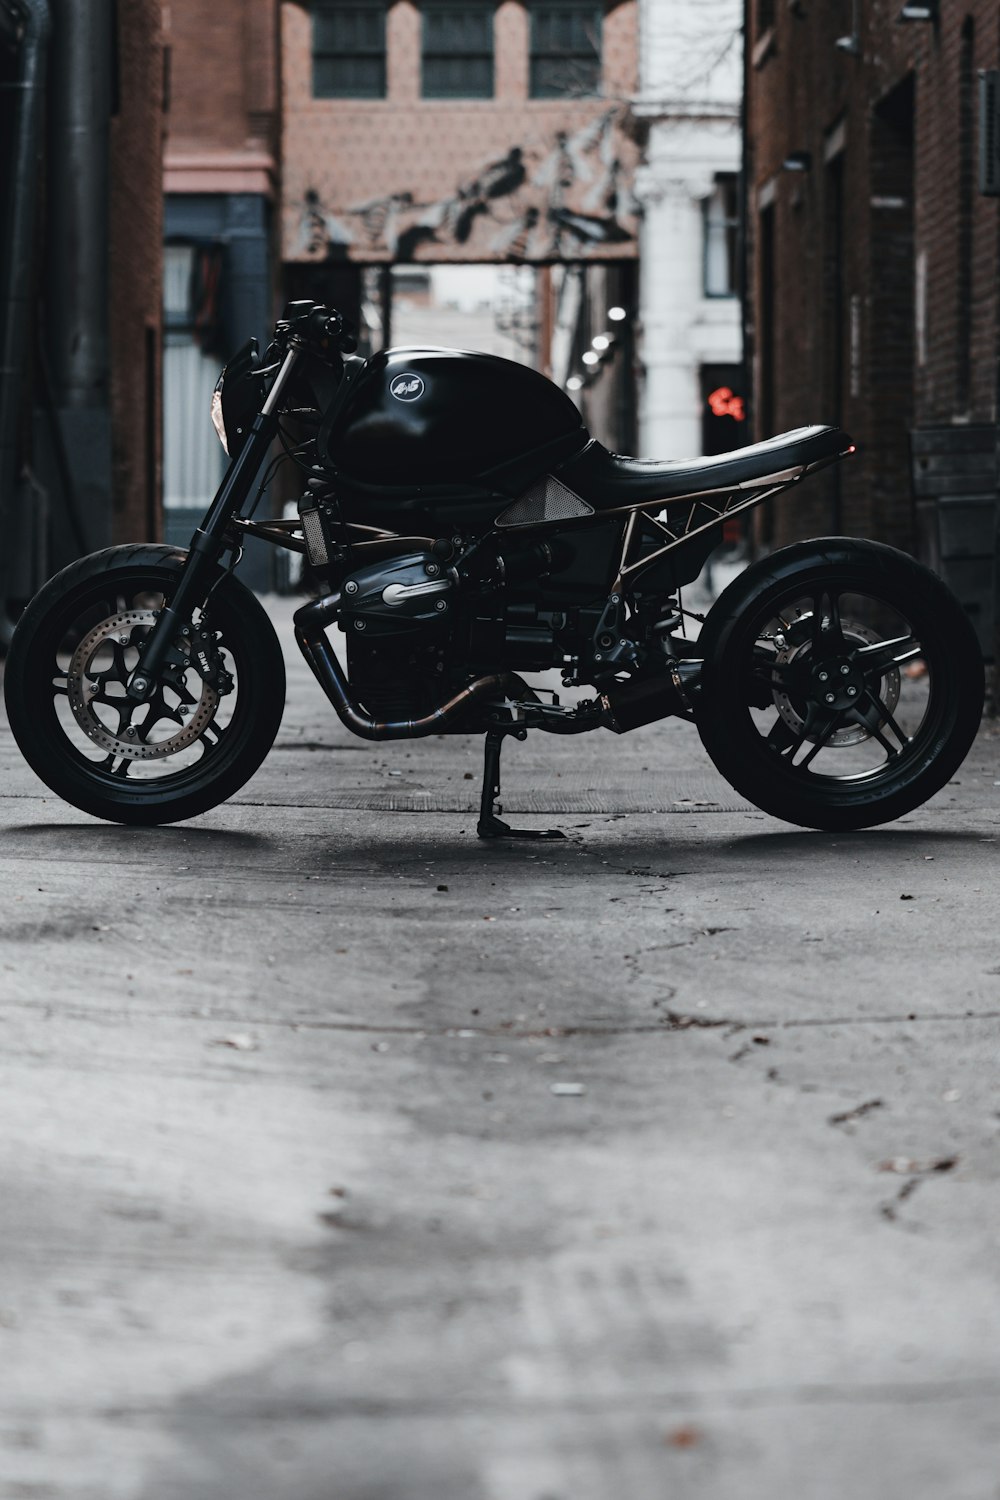 black motorcycle parked beside brown wooden door